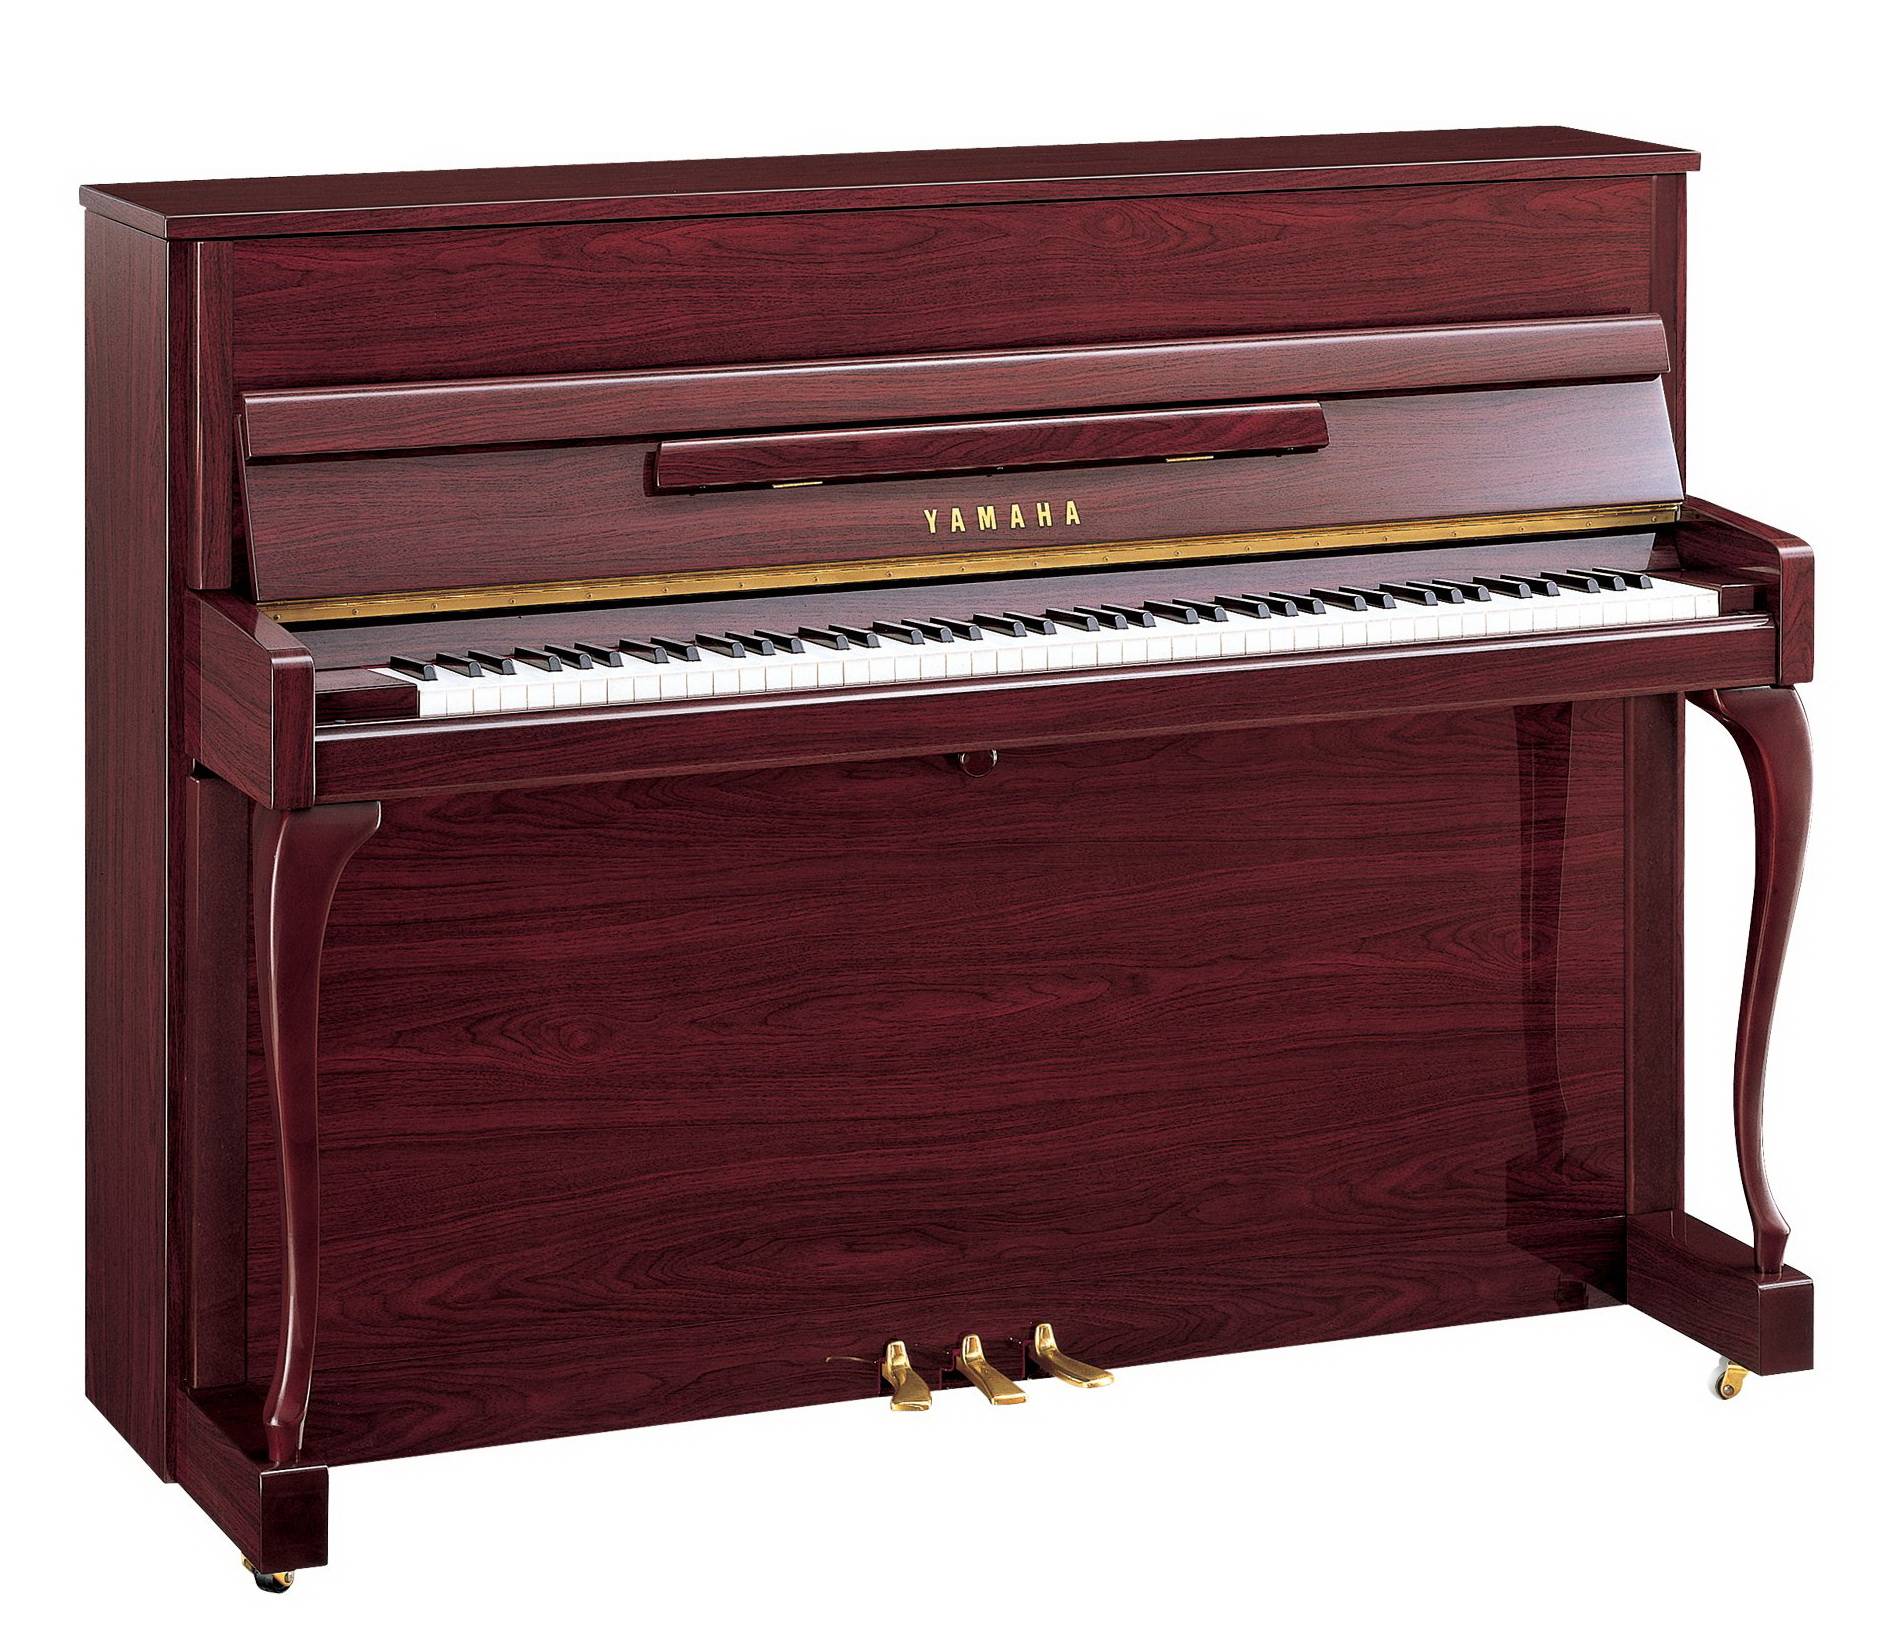 YAMAHA JX113 CPPM - акустическое пианино 113см., цвет PM - красное дерево, полированное, с банкеткой